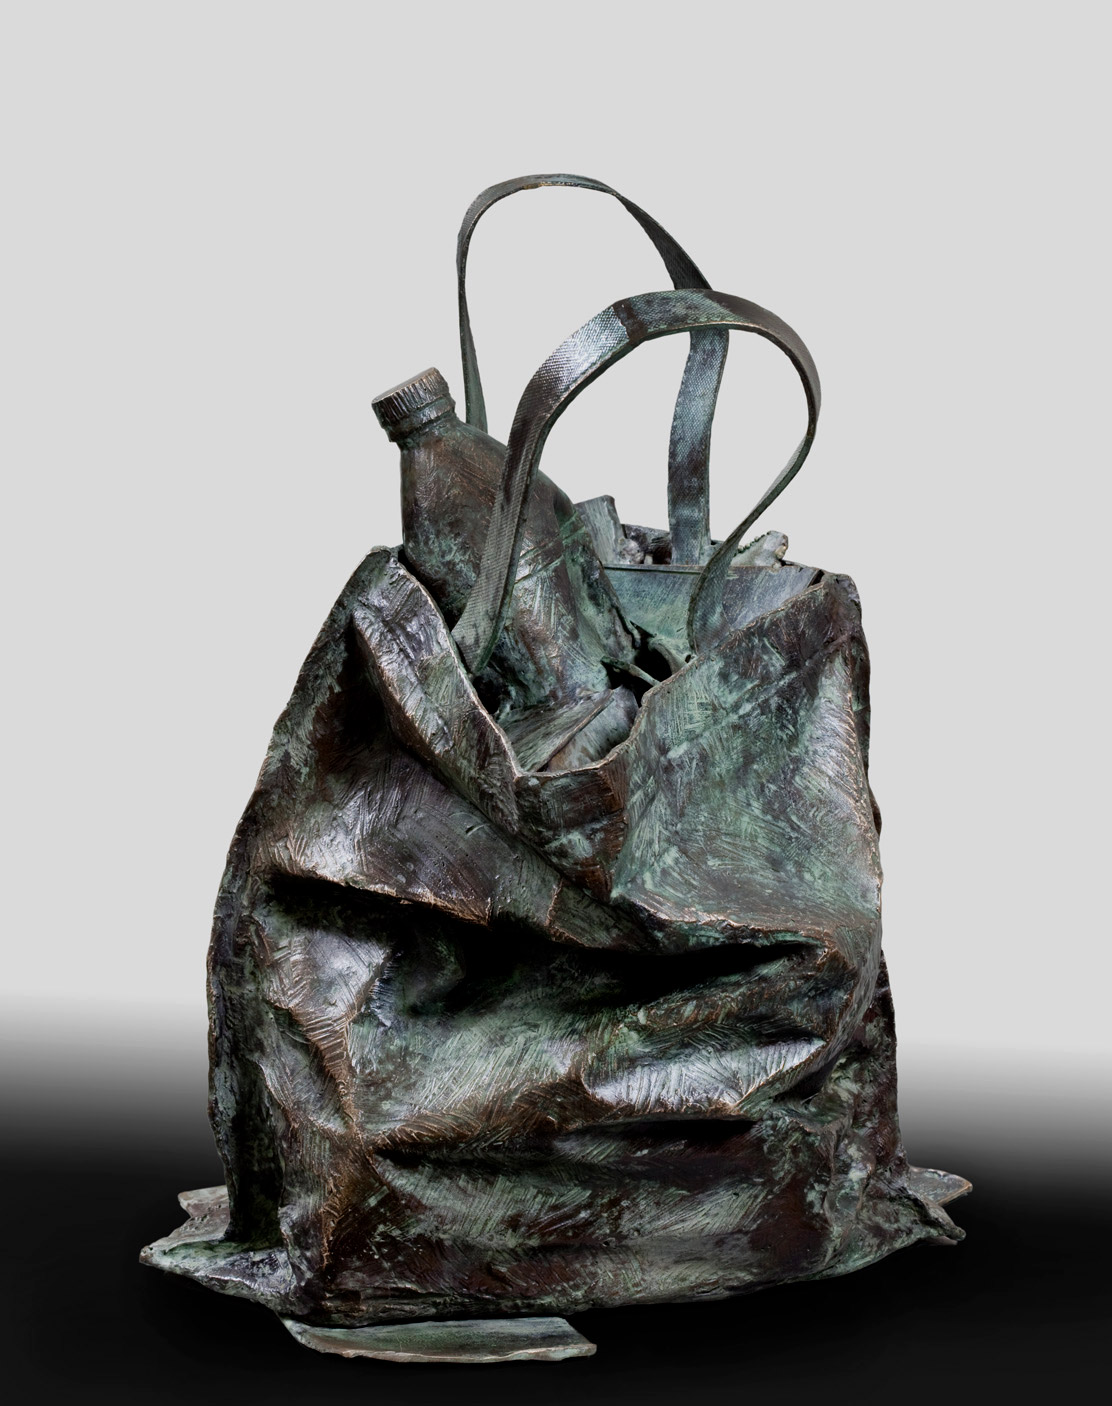 Escultura realizada en bronce por el artista plástico Manuel Quintana Martelo.